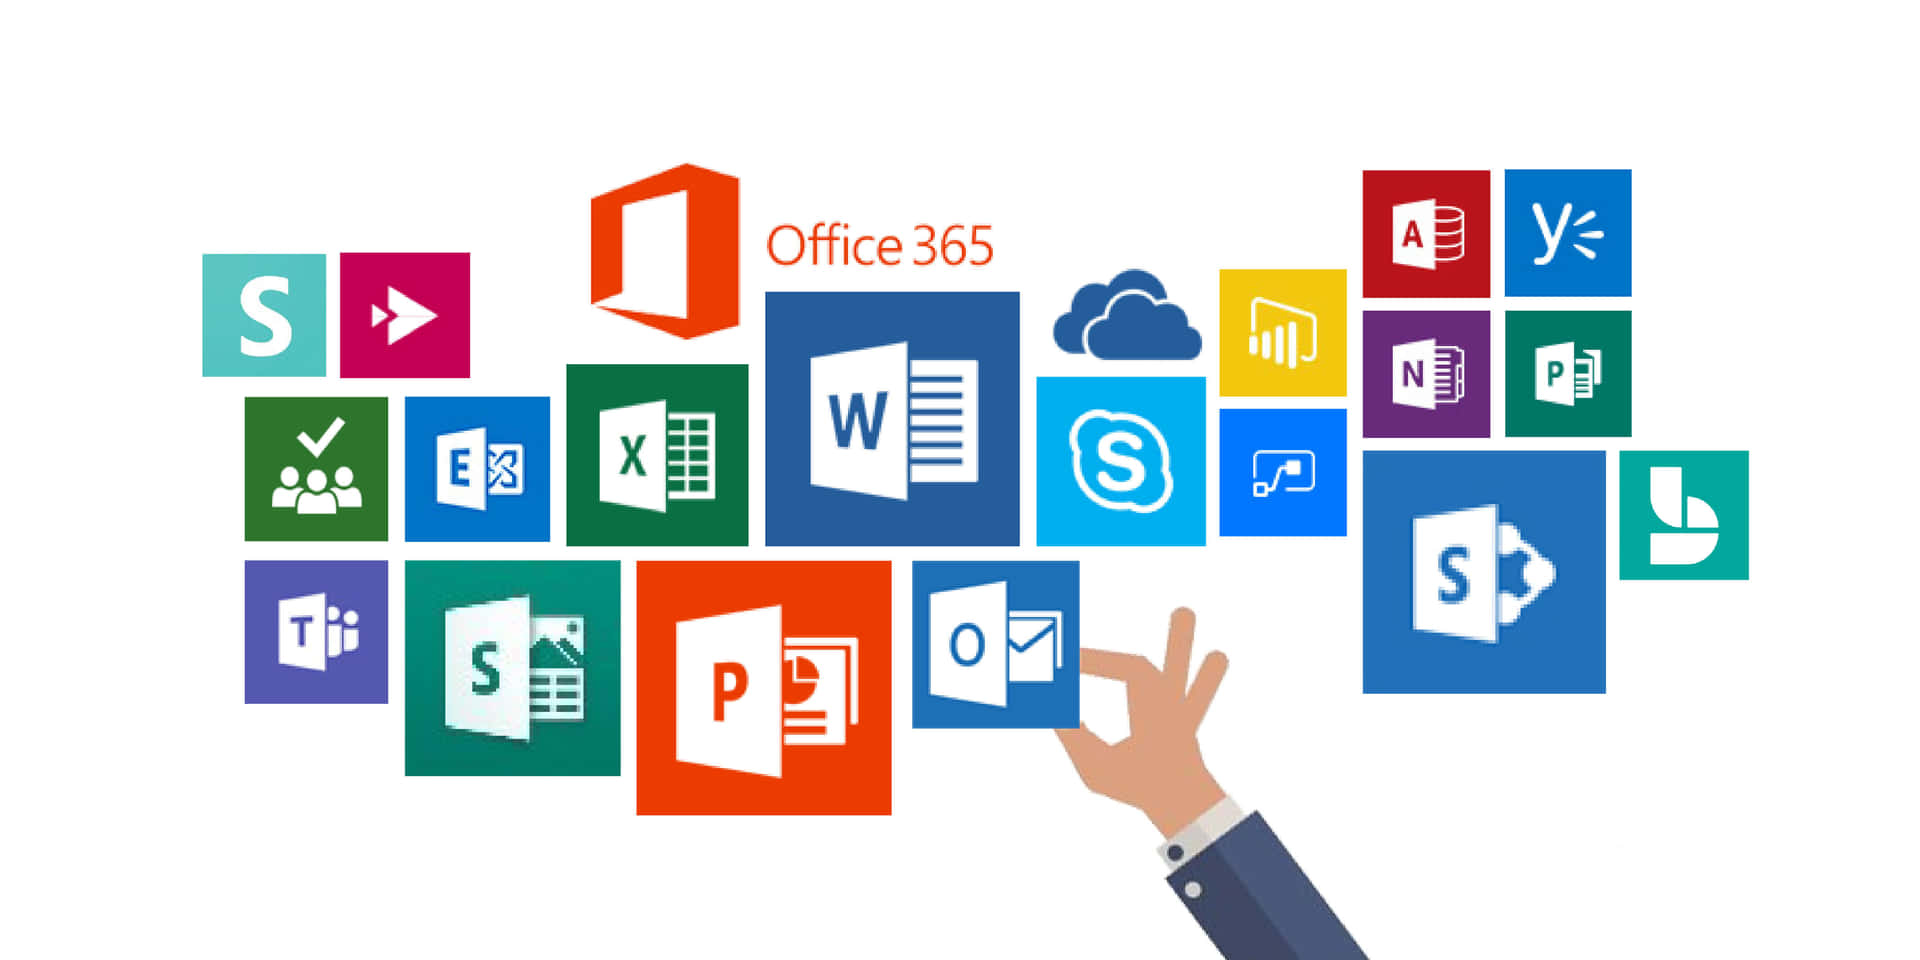 Følgtrenden Med Microsoft Office 365 Ved At Vælge En Tilpasset Computer- Eller Mobilbaggrund.